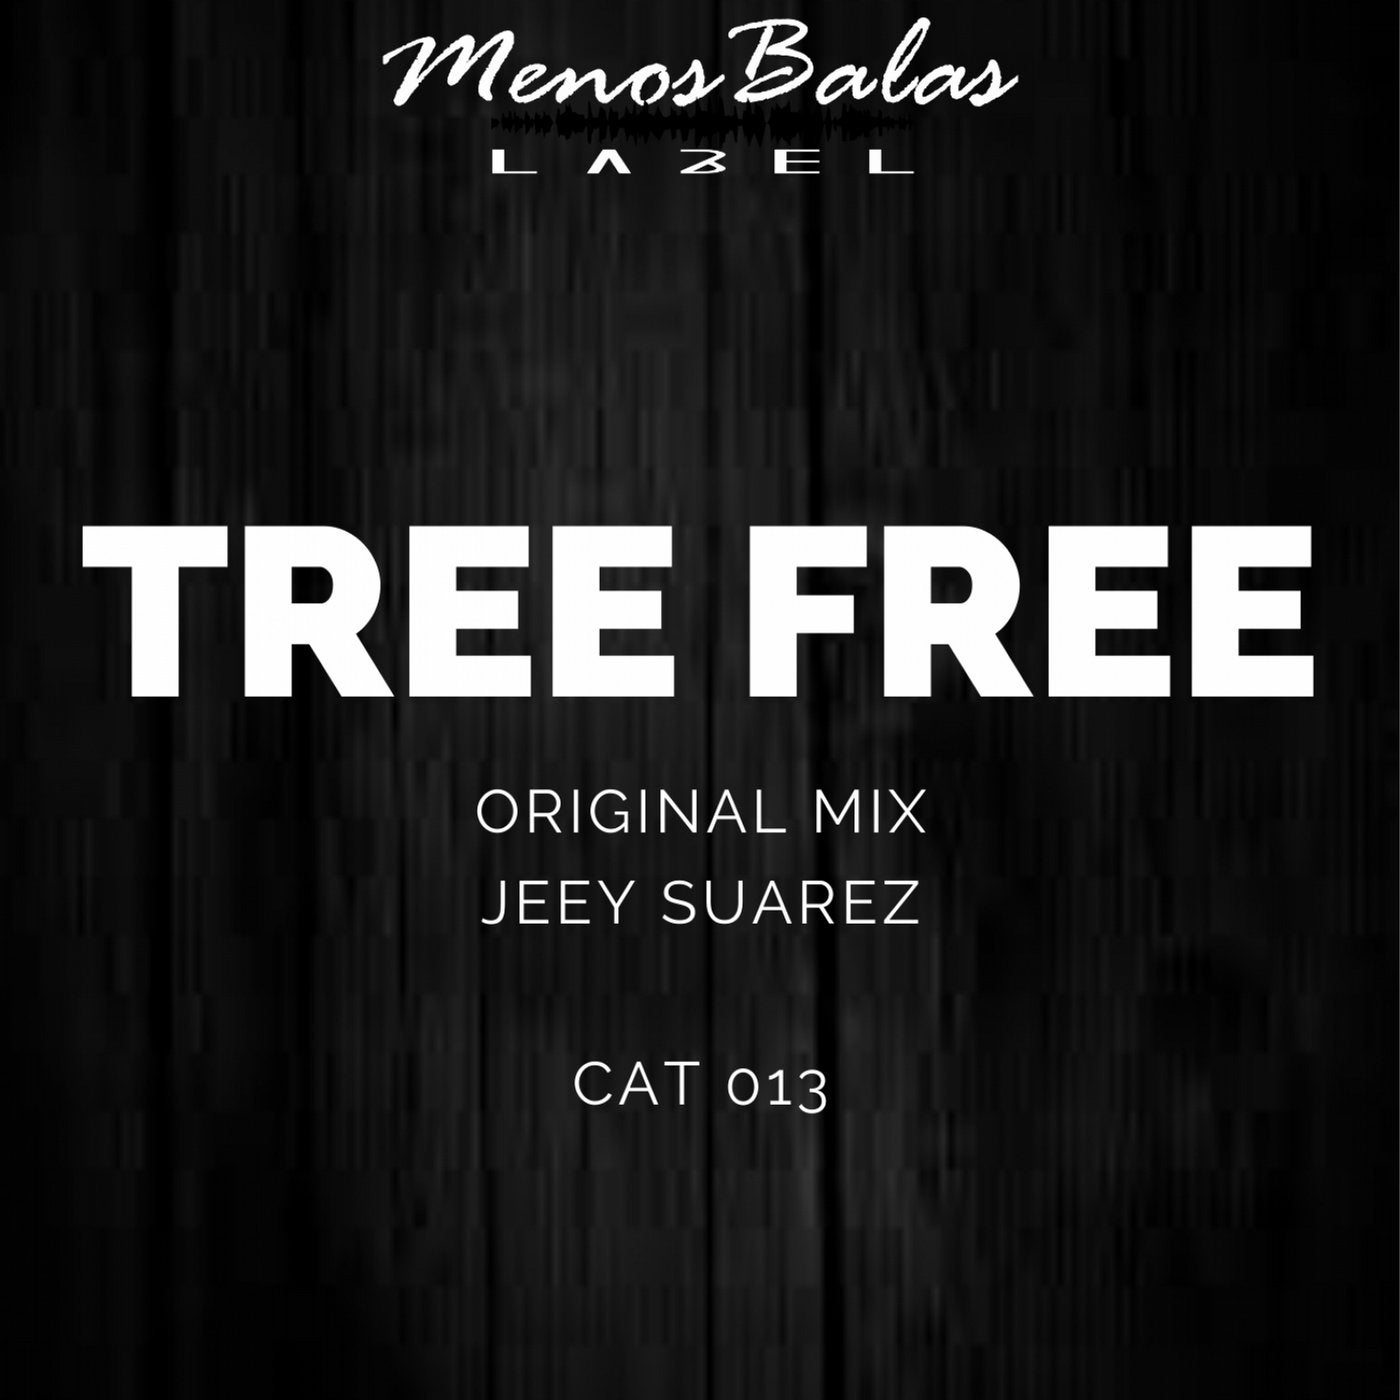 Tree Free